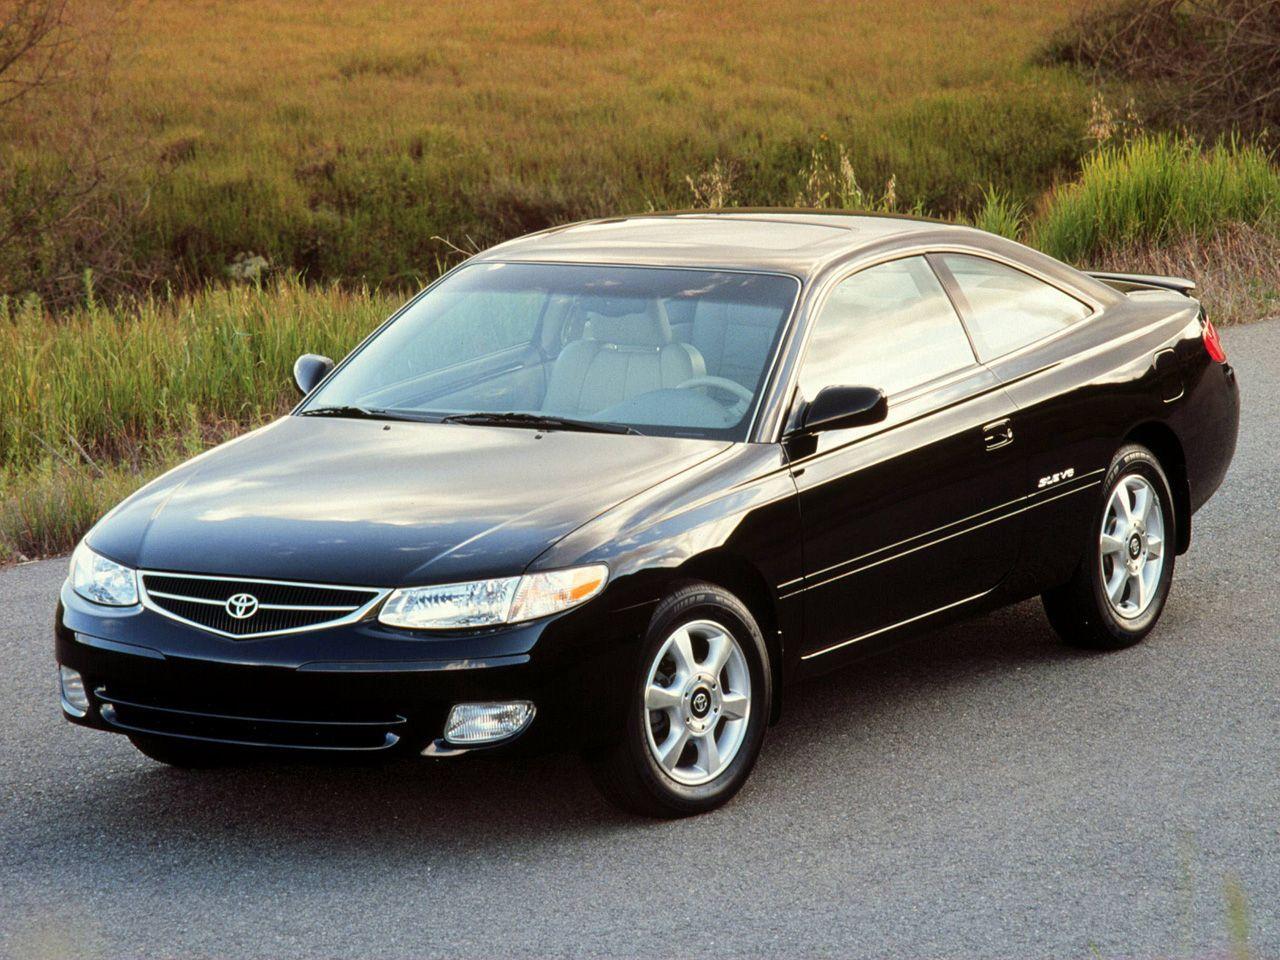 Все, что вам нужно знать о Toyota Solara 1999 года выпуска.